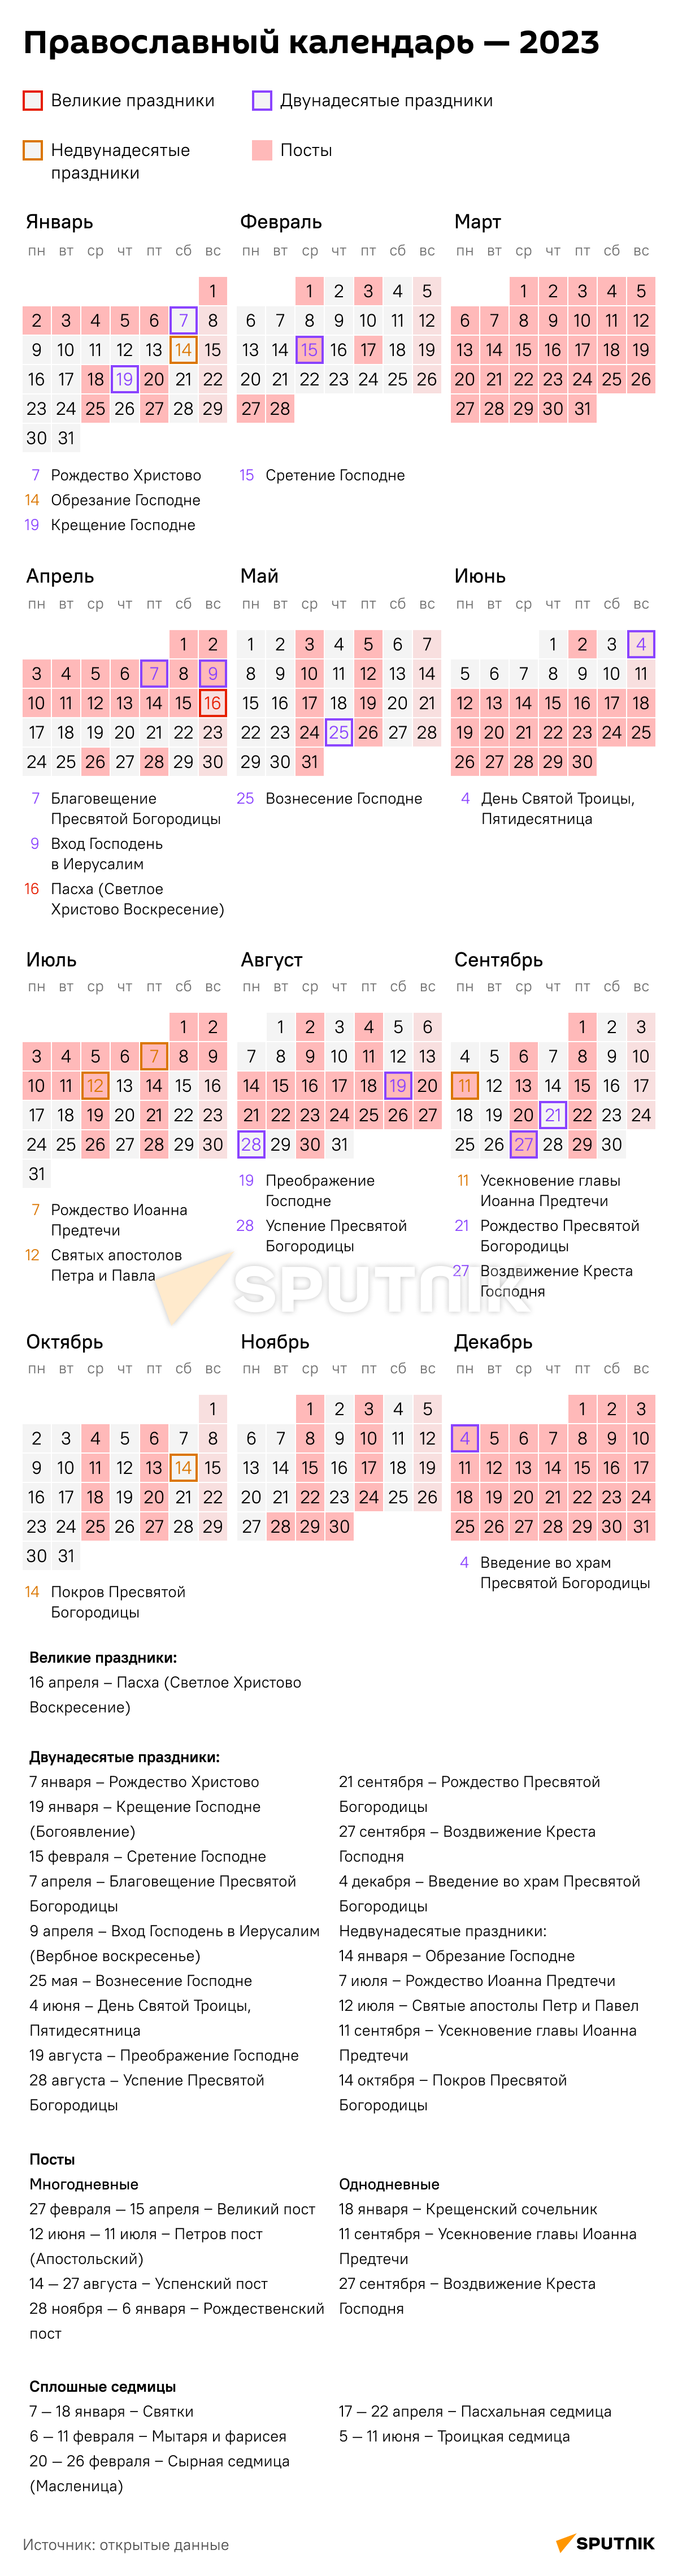 посты православные в 2023г календарь